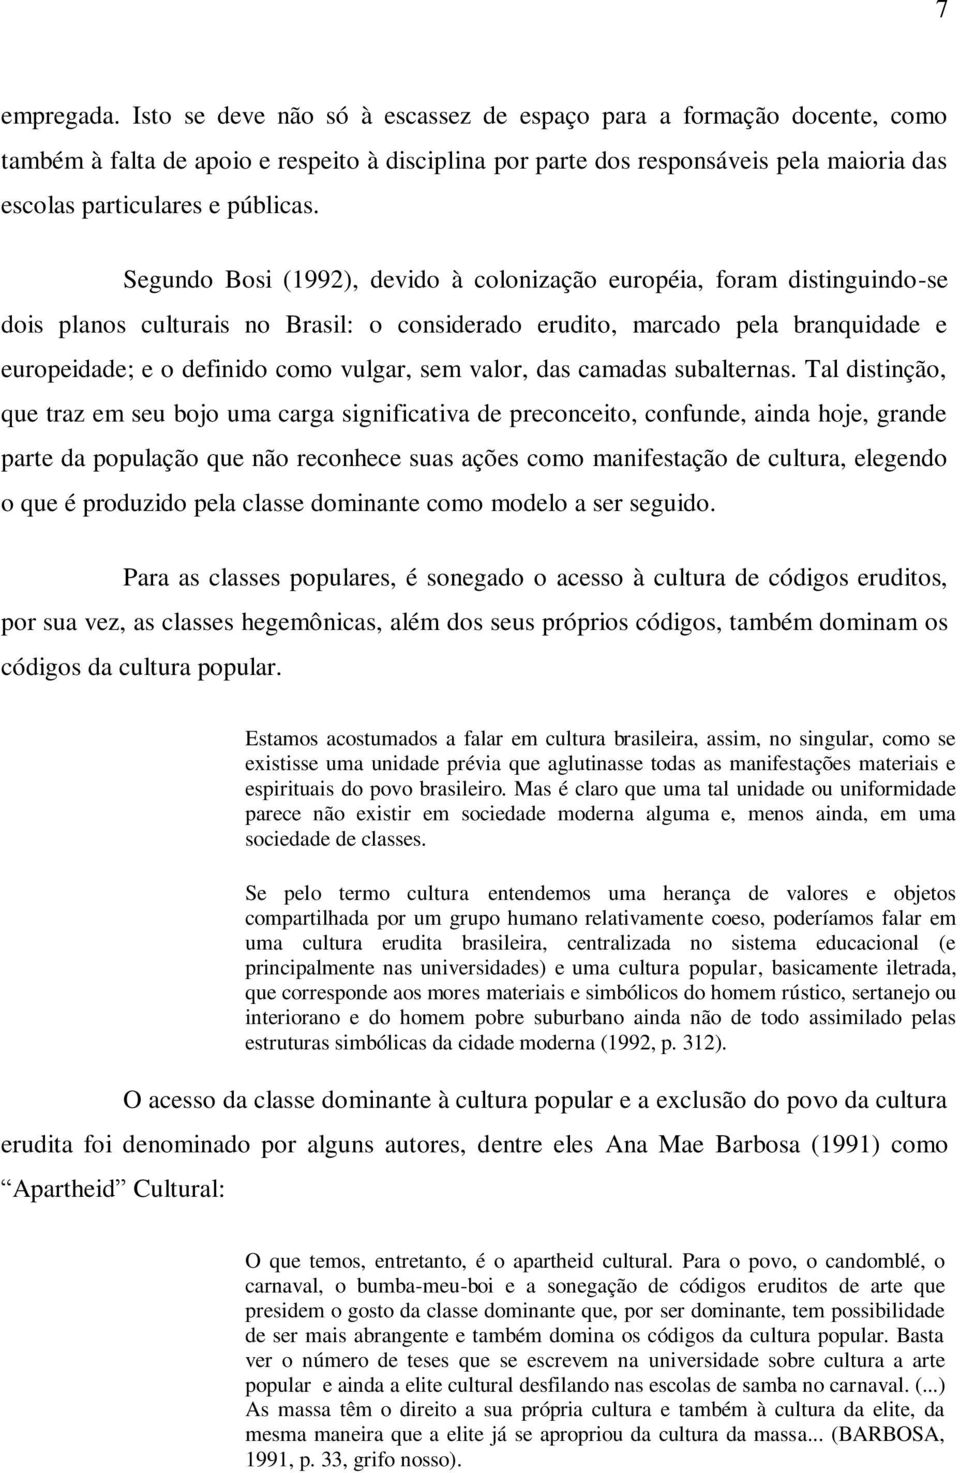 Segundo Bosi (1992), devido à colonização européia, foram distinguindo-se dois planos culturais no Brasil: o considerado erudito, marcado pela branquidade e europeidade; e o definido como vulgar, sem